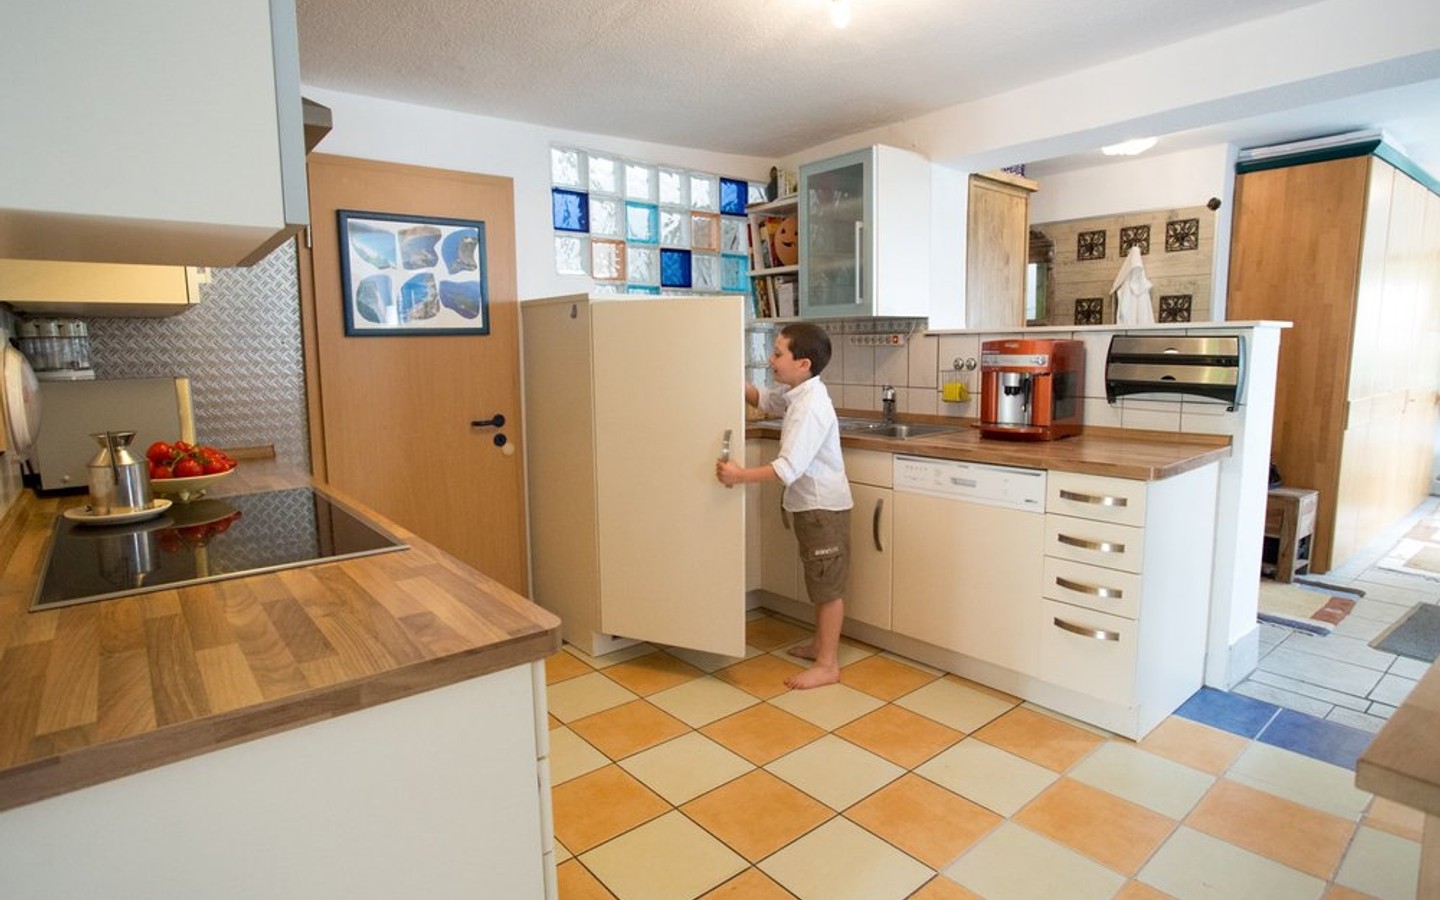 Küche - Einfamilienhaus mit Gartenparadies in zentraler Lage von Neckargemünd-Mückenloch!